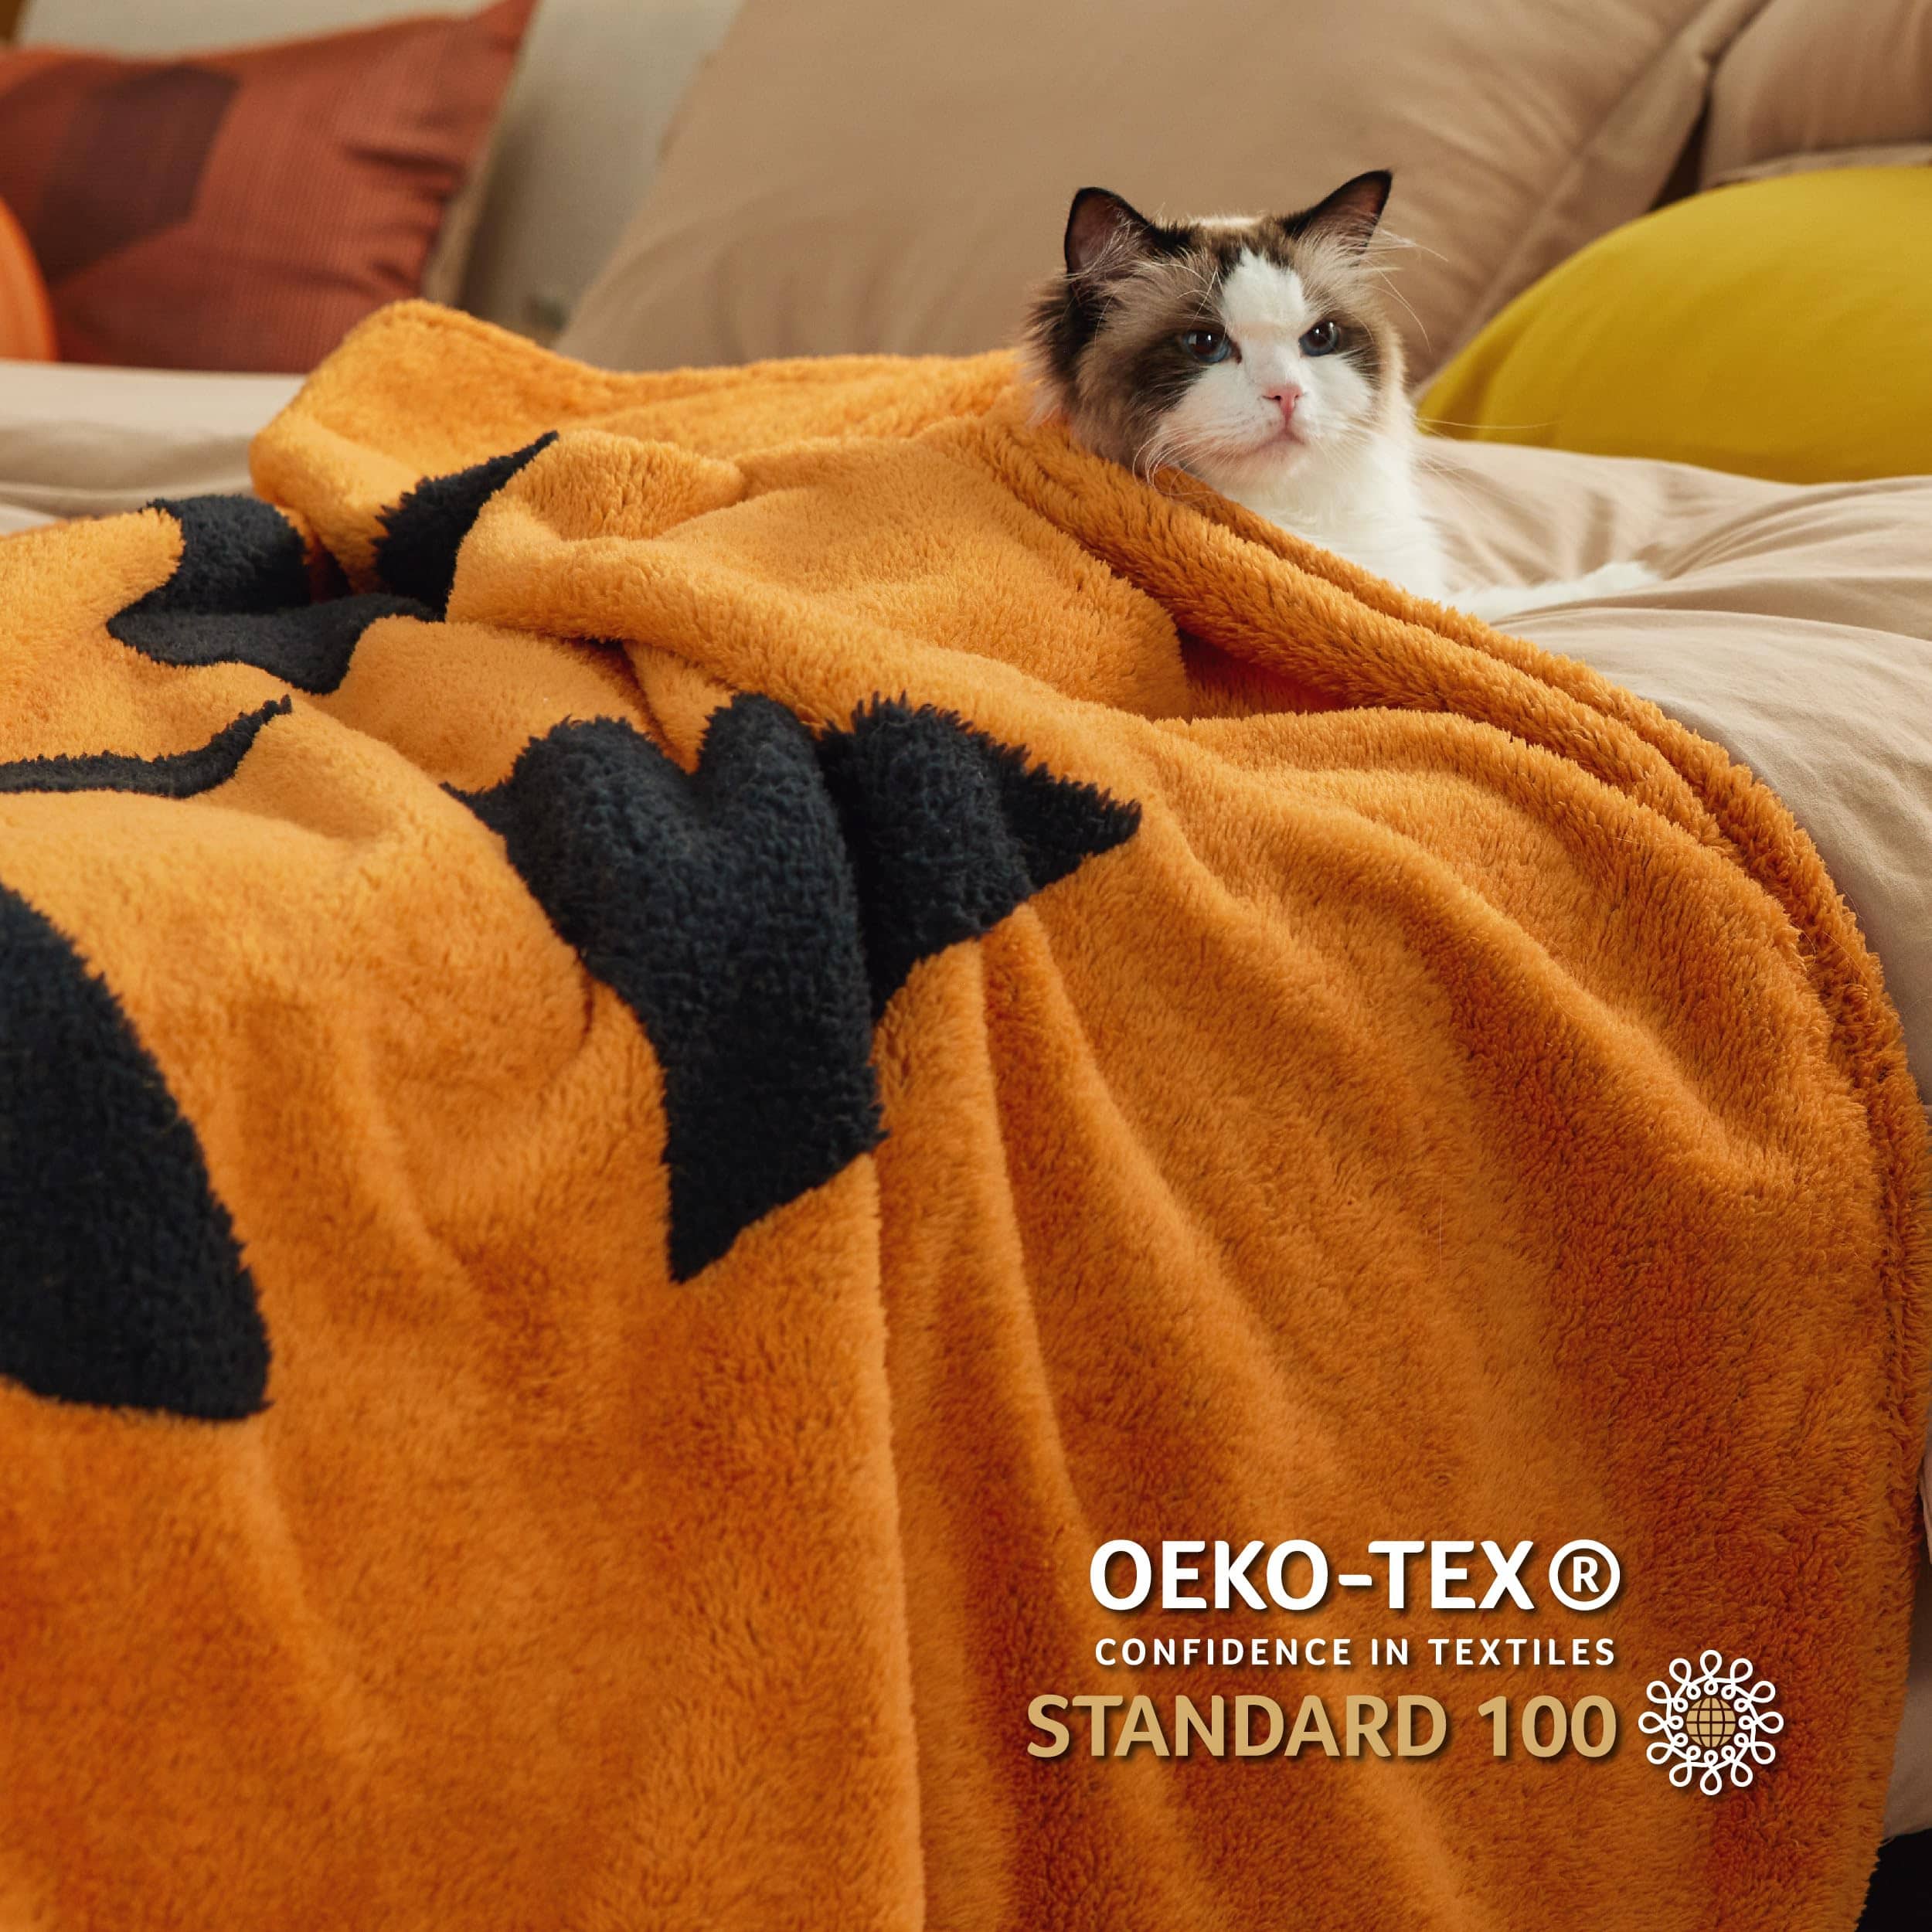 Bedsure Halloween Fleece Throw Blanket